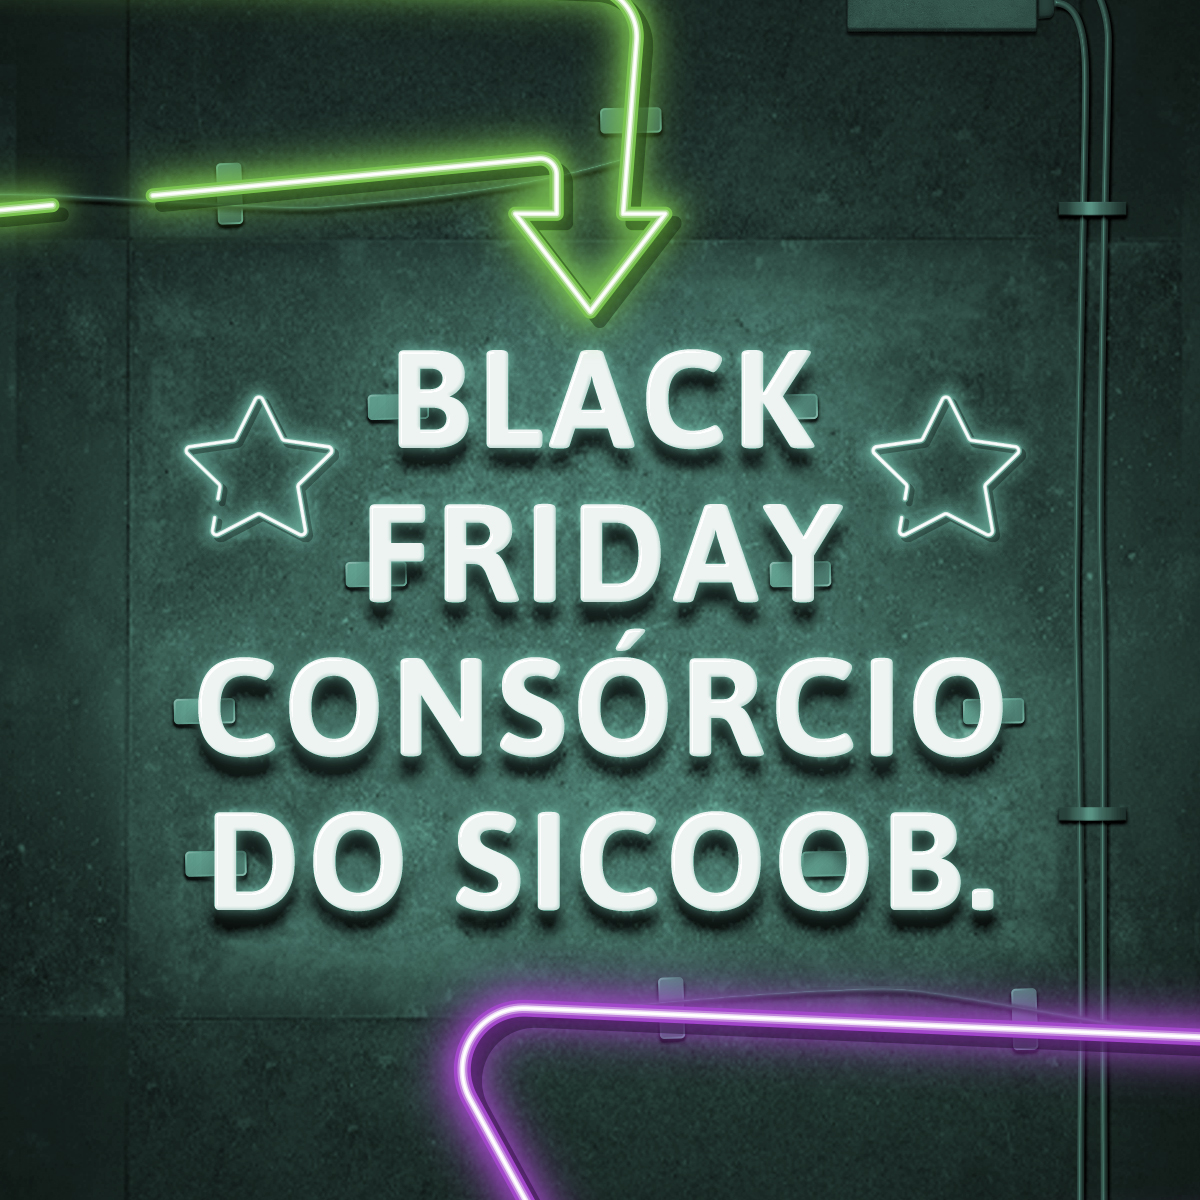 Você está visualizando atualmente Com desconto de 25%, Sicoob promove a Black Friday Consórcios